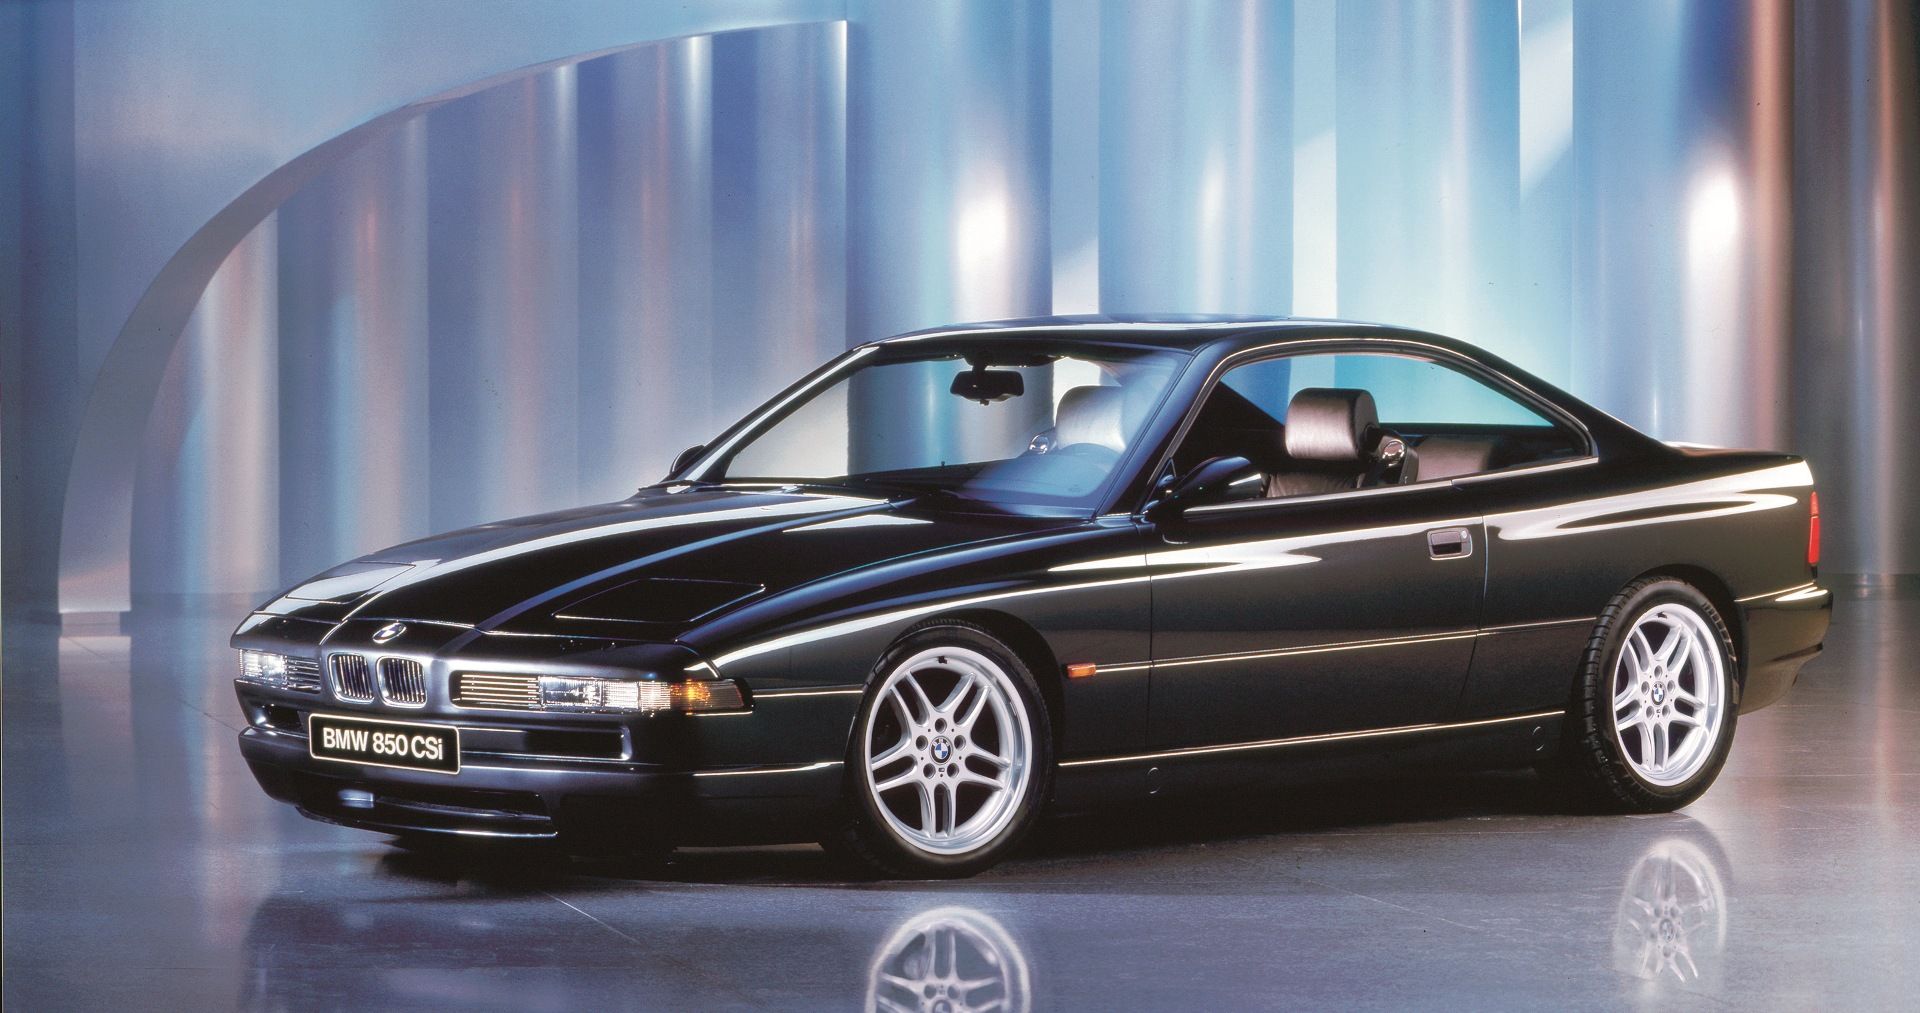 The-BMW-850CSi-E31-via-bmwblog